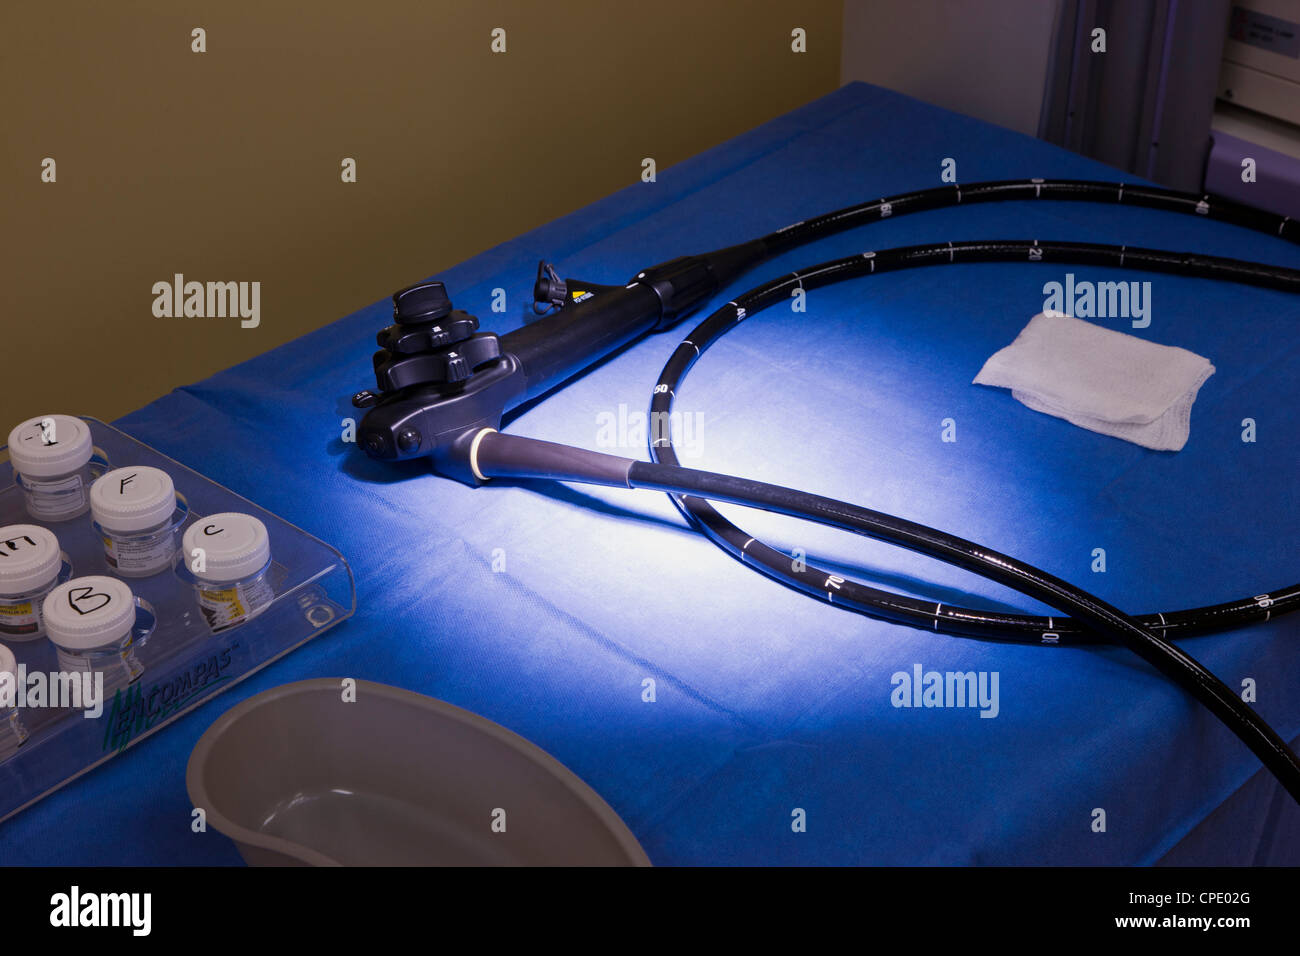 Chirurgischen Suite im Krankenhaus für Endoskopie und Koloskopie Verfahren vorbereitet. Stockfoto